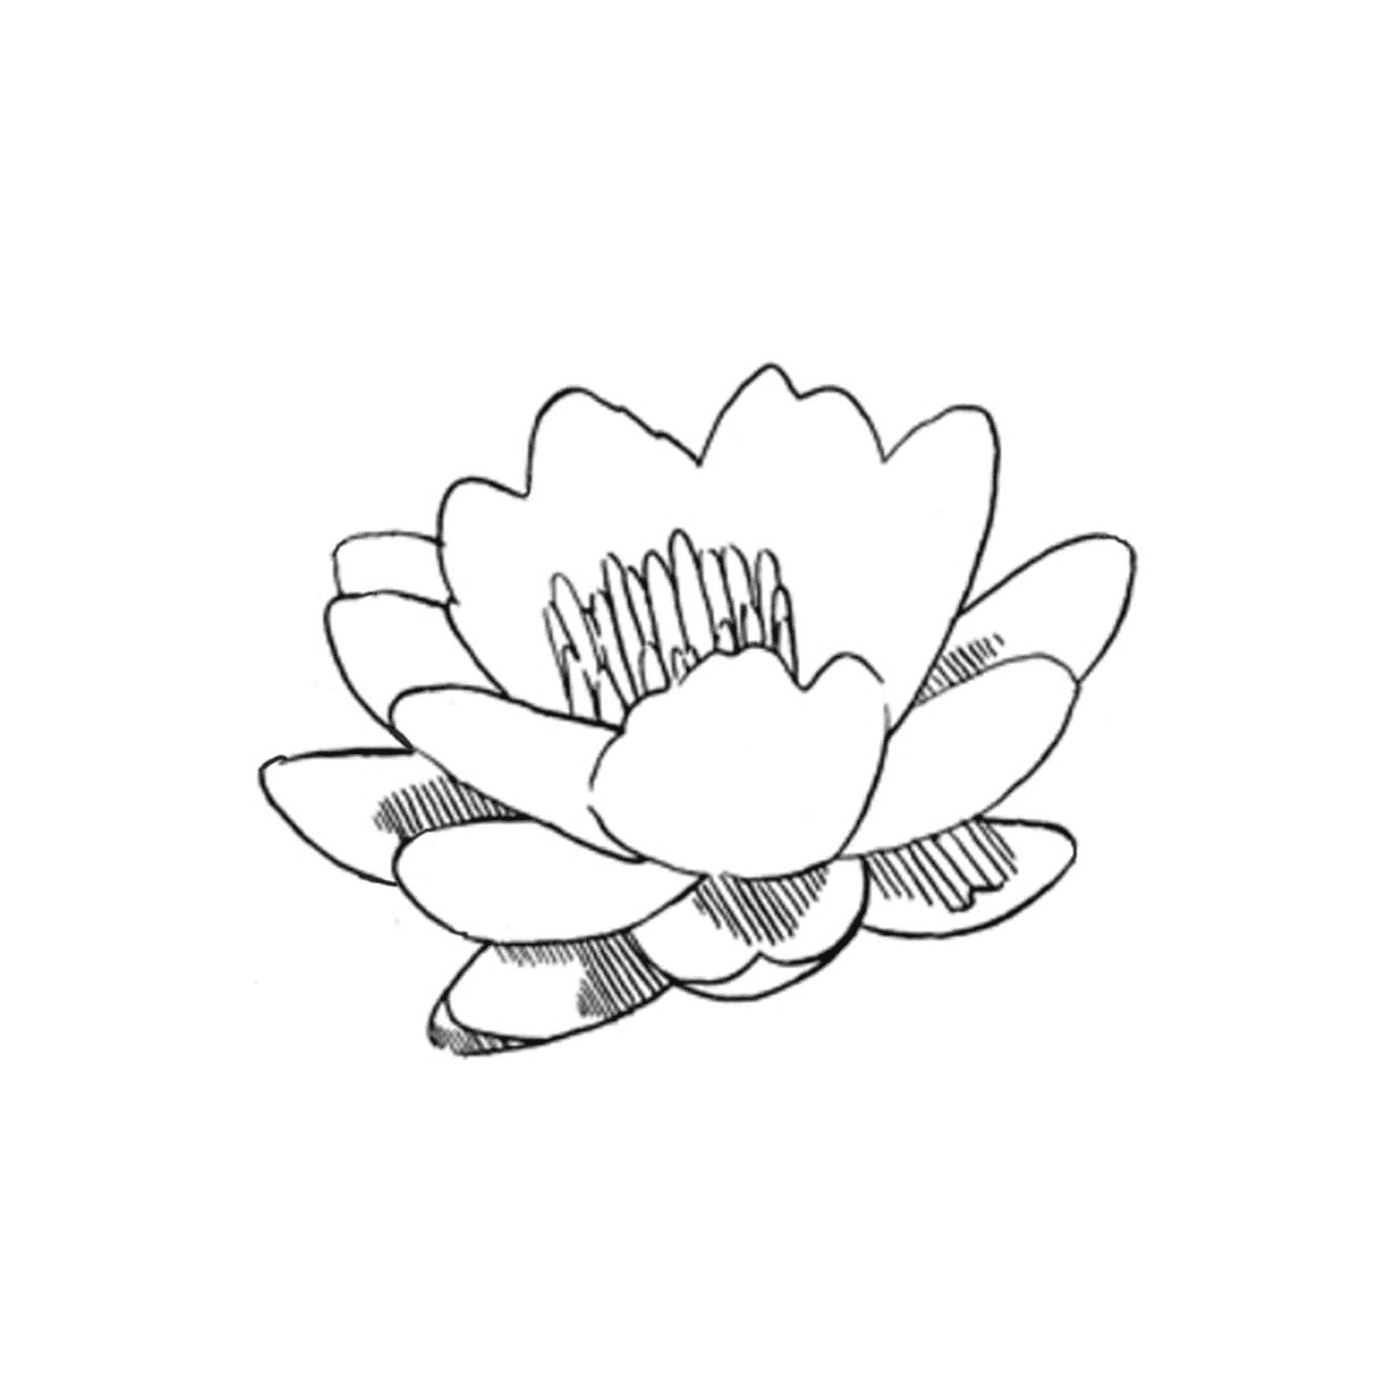  Una flor de loto 